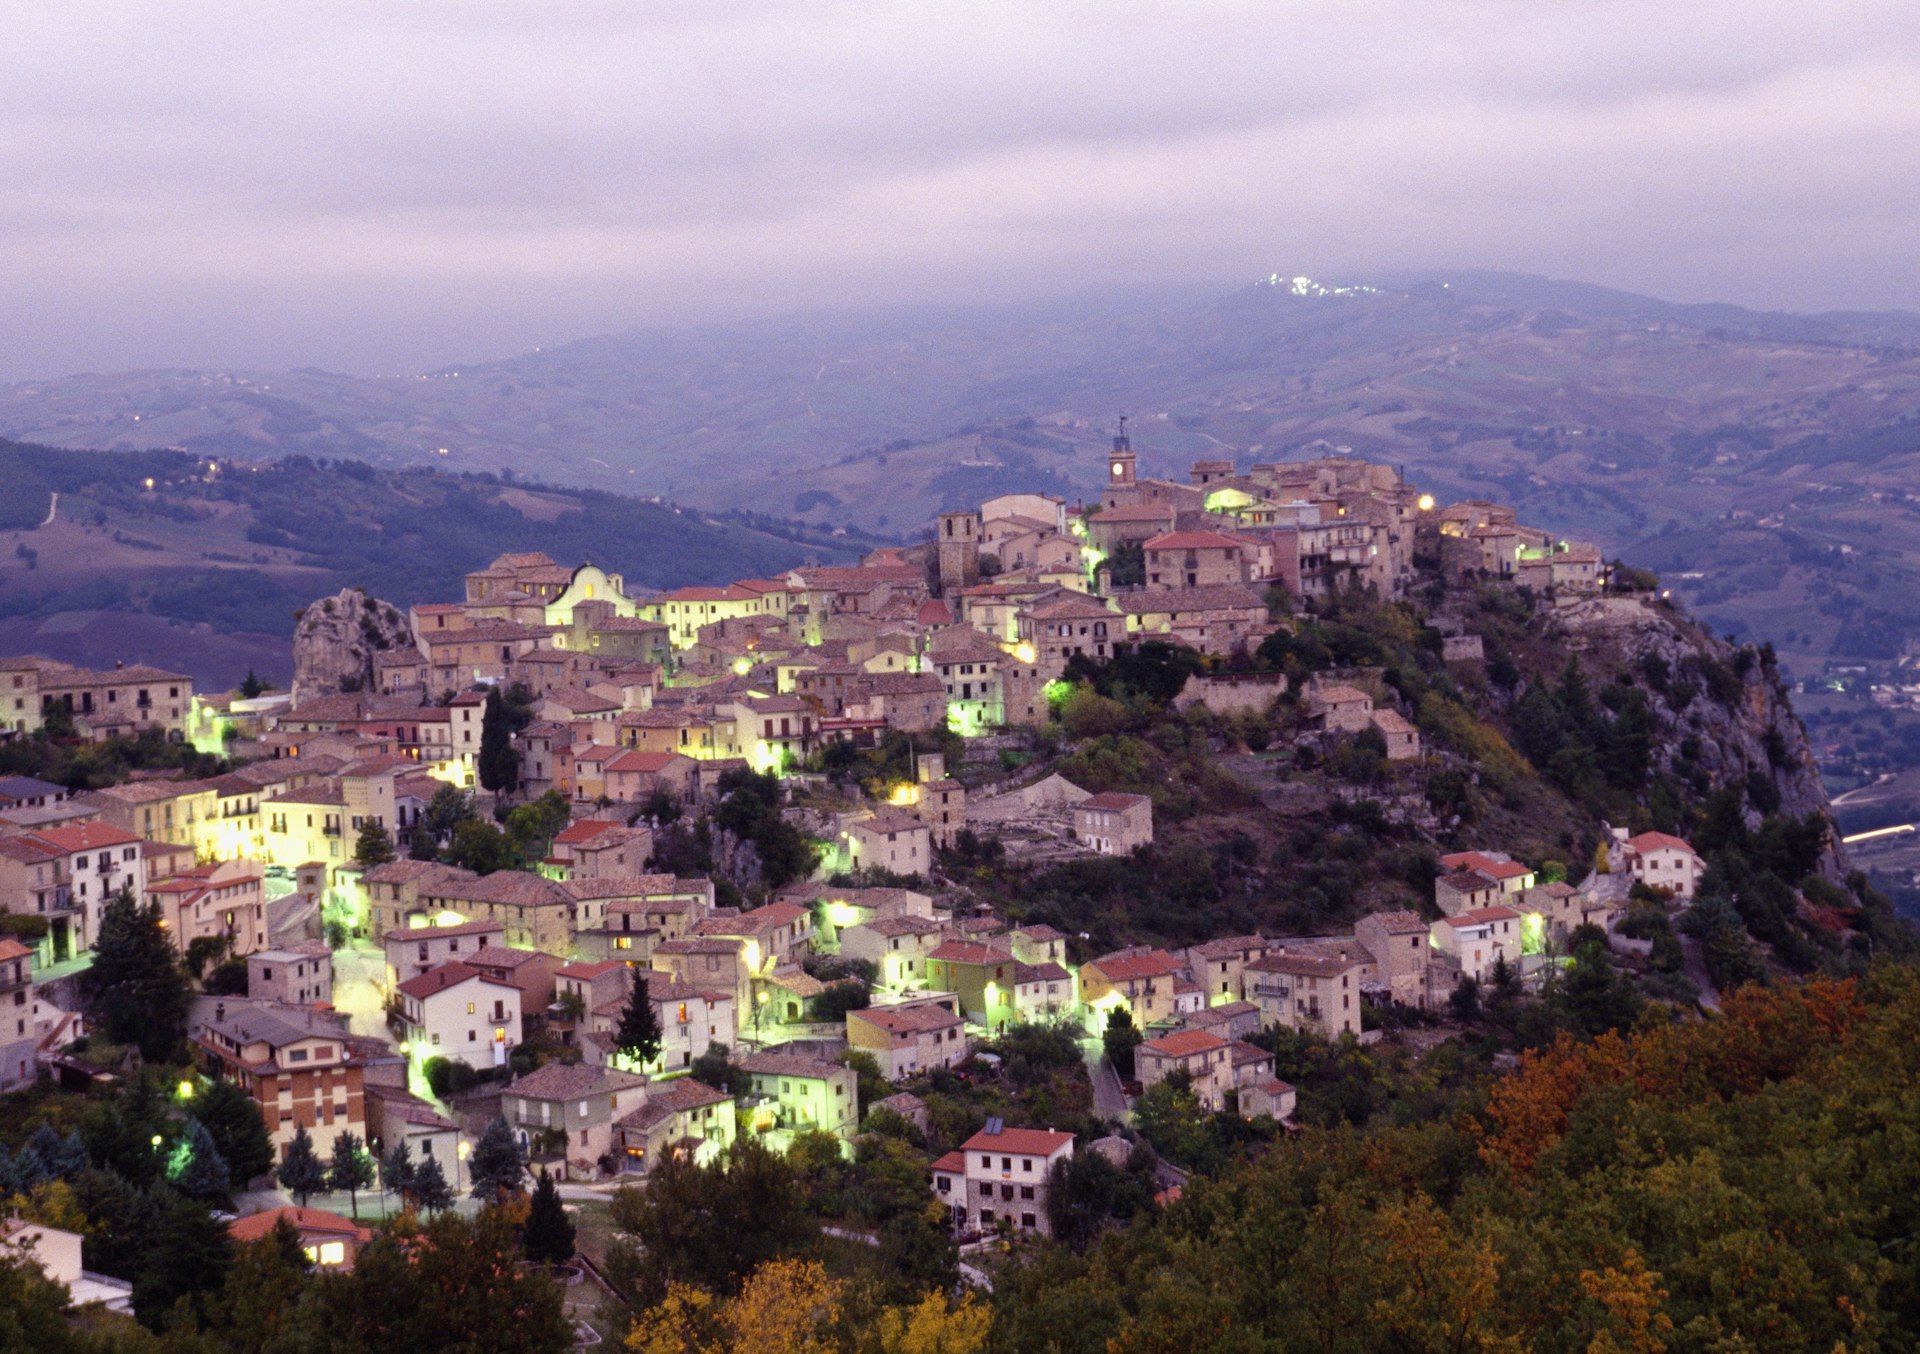 View of Castropignano